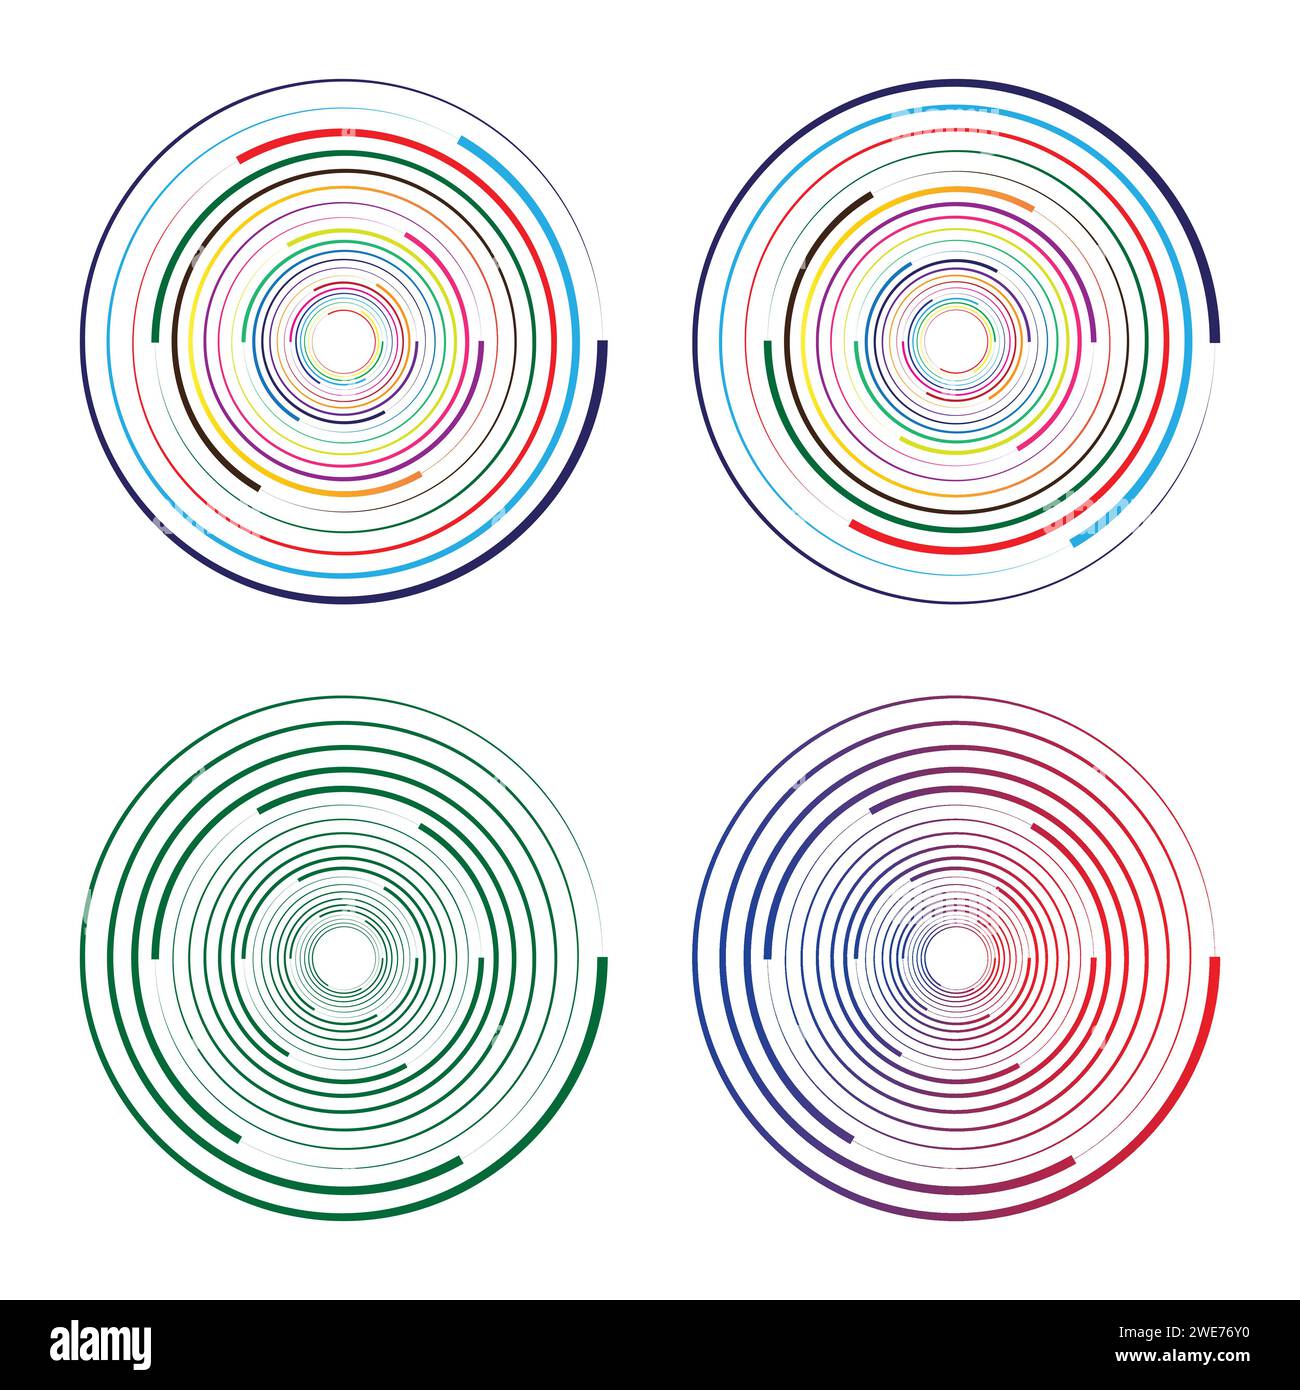 Cerchi casuali concentrici con linee dinamiche. Vortex Circular swirl (vortice circolare). Illustrazione Vettoriale